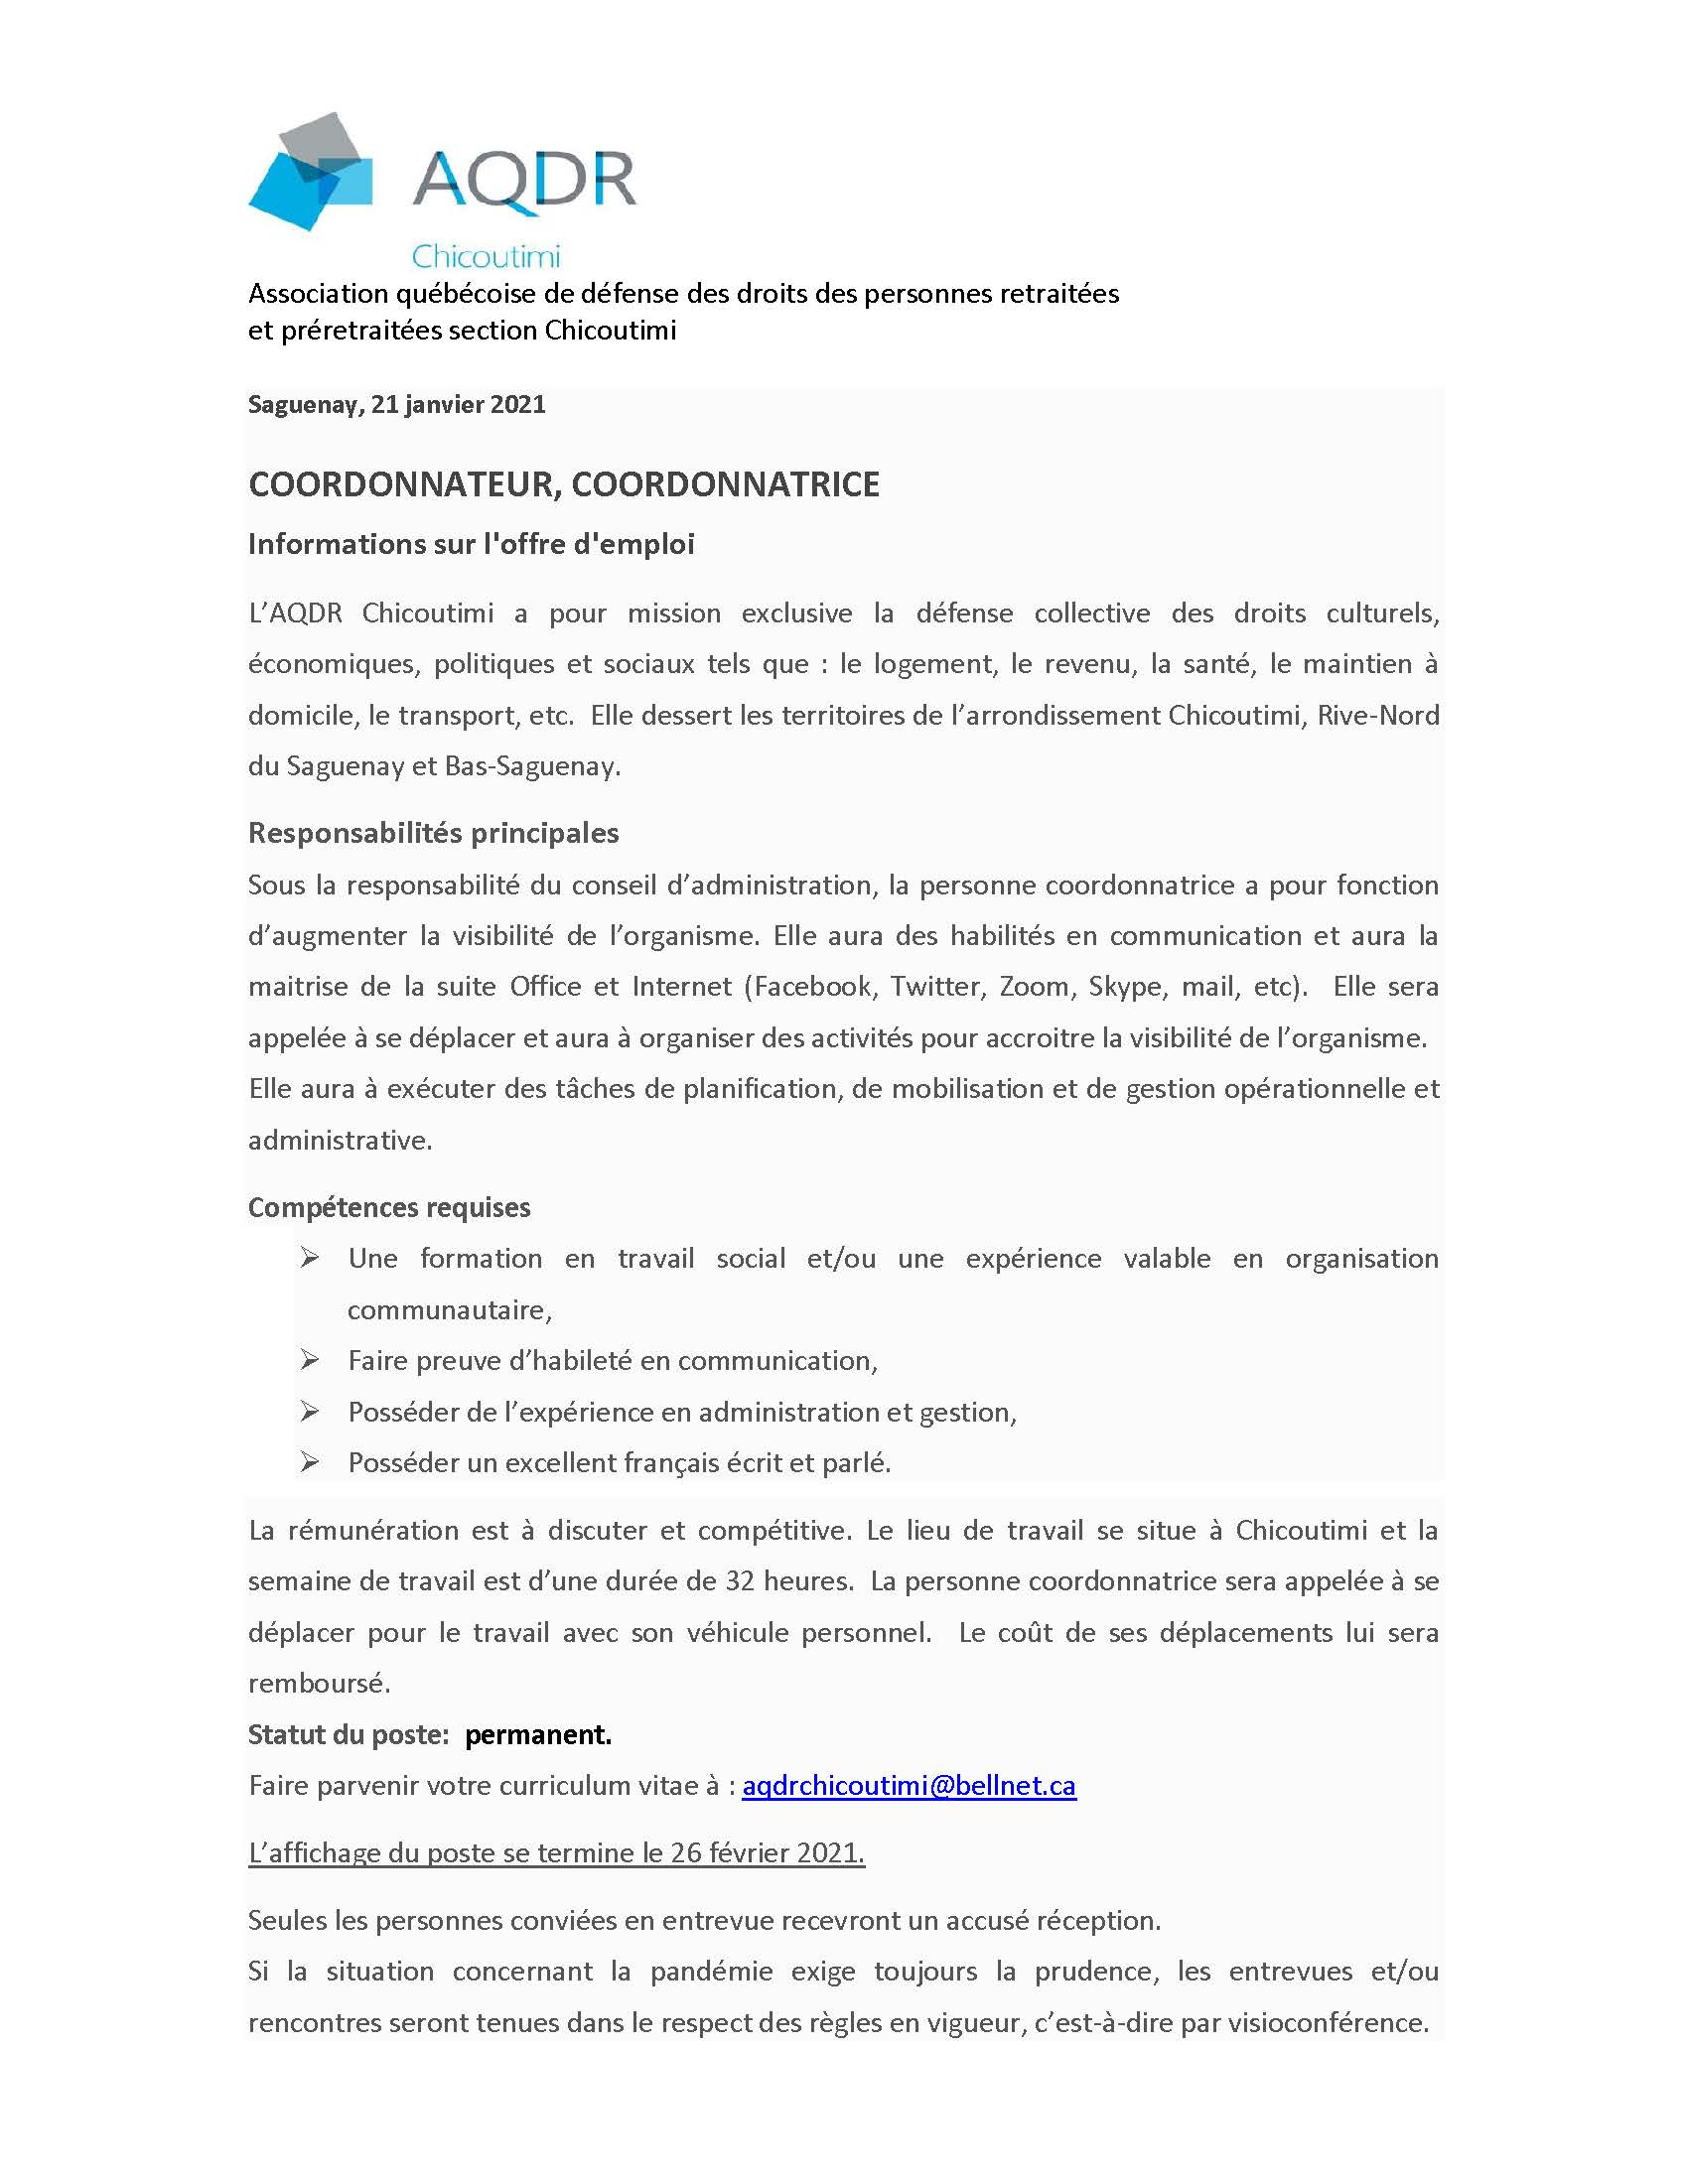 Affichage poste de coordonnation AQDR Chicoutimi janvier 2021